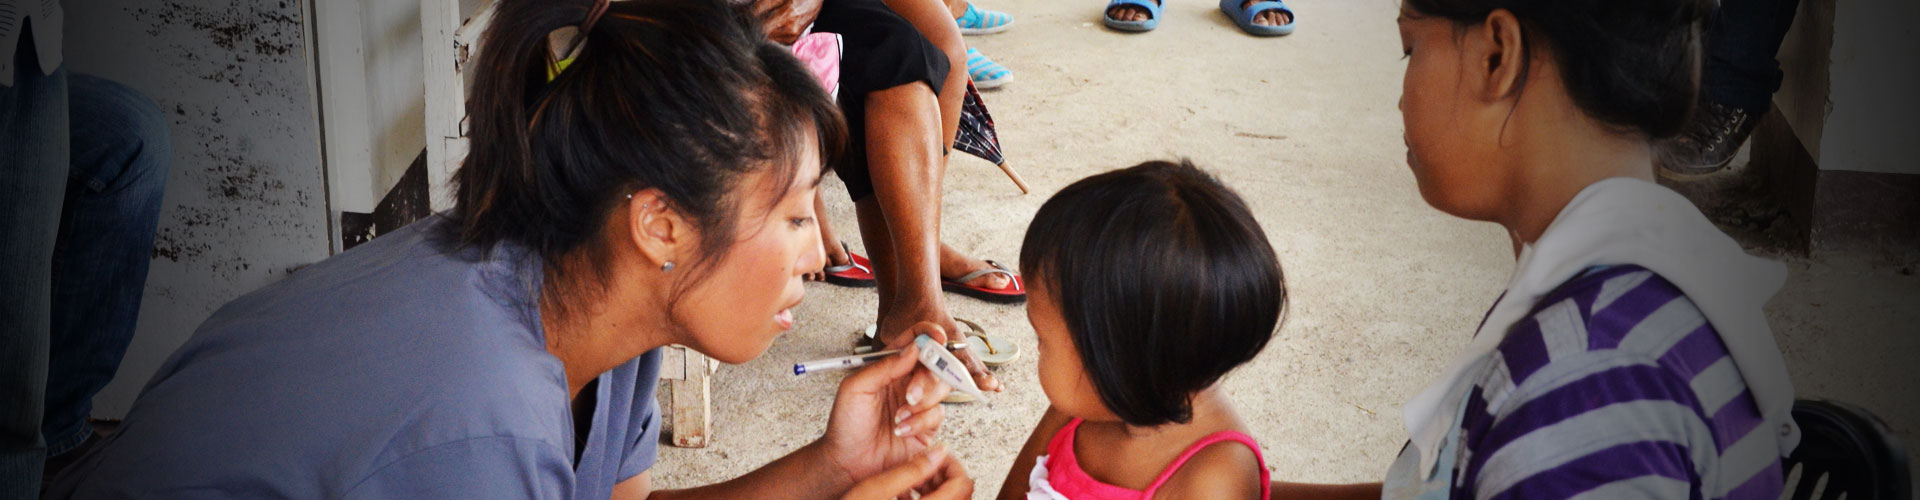 Voluntariado médico rural en Filipinas